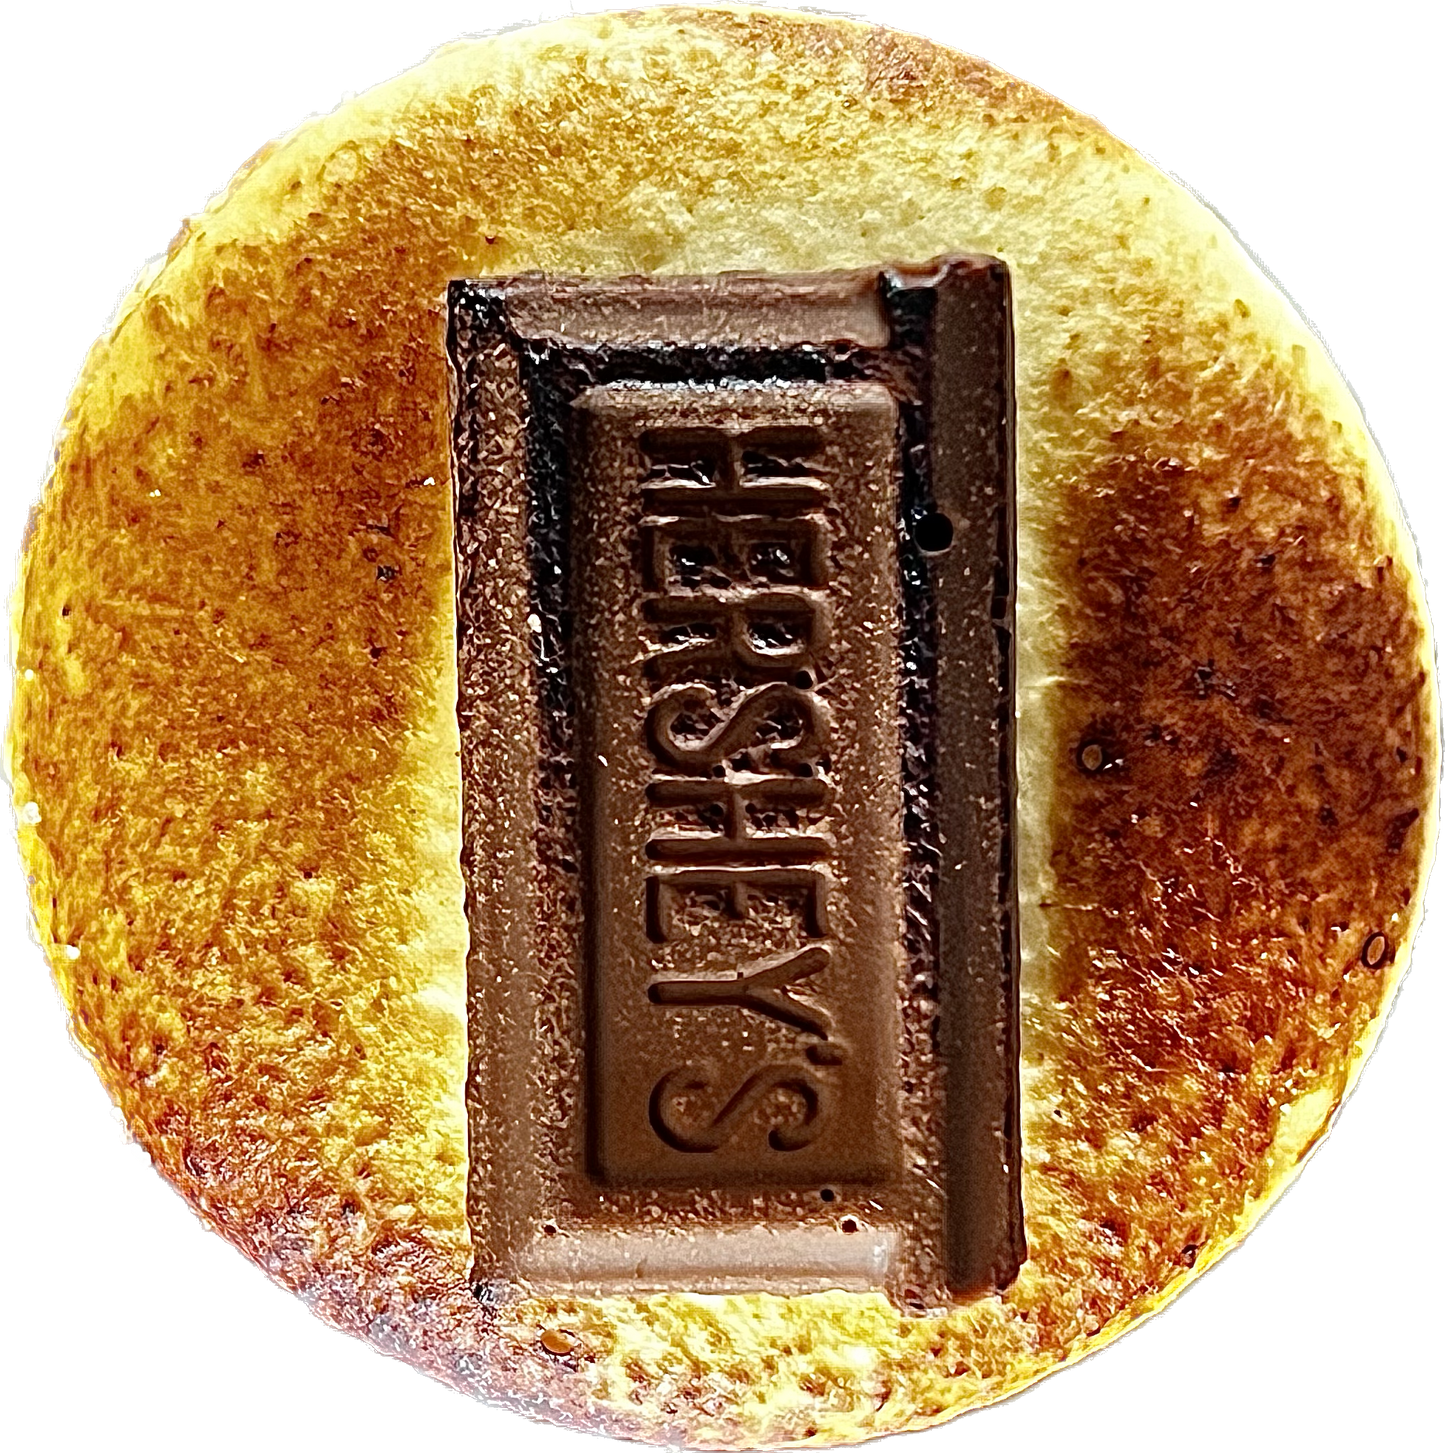 Smorecaron - Chocolate Topped